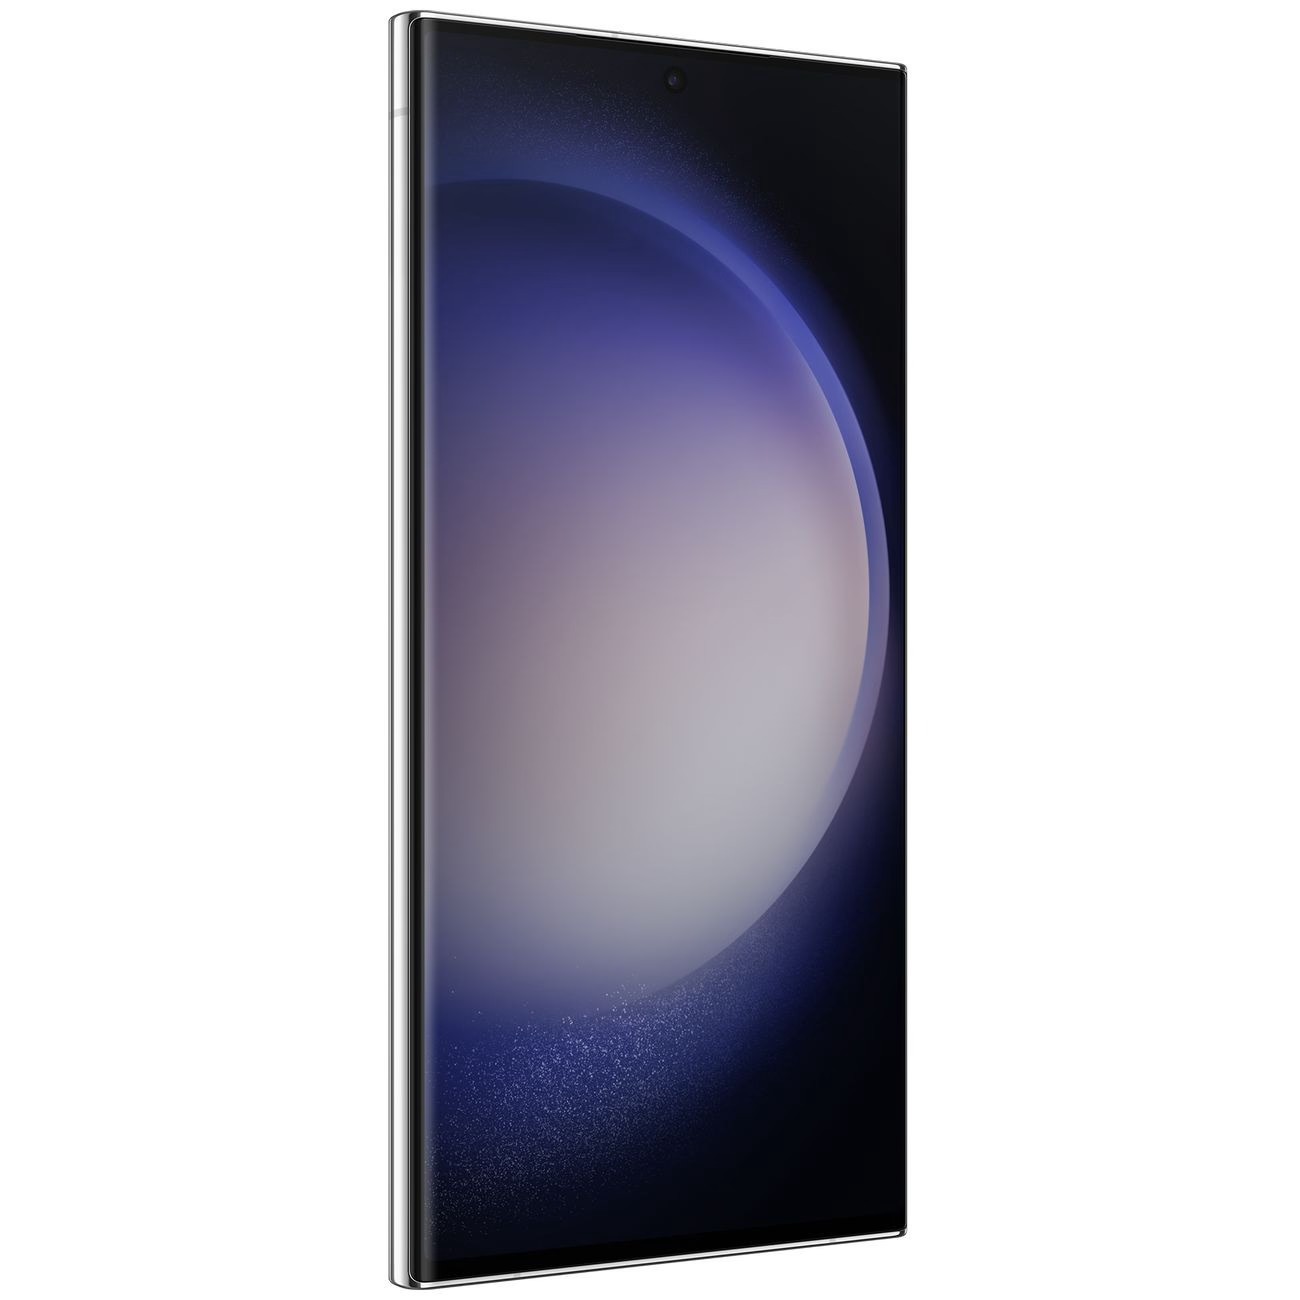 Купить смартфон samsung galaxy s23 ultra 12/256gb sky blue S-Серия в официальном магазине Apple, Samsung, Xiaomi. iPixel.ru Купить, заказ, кредит, рассрочка, отзывы,  характеристики, цена,  фотографии, в подарок.